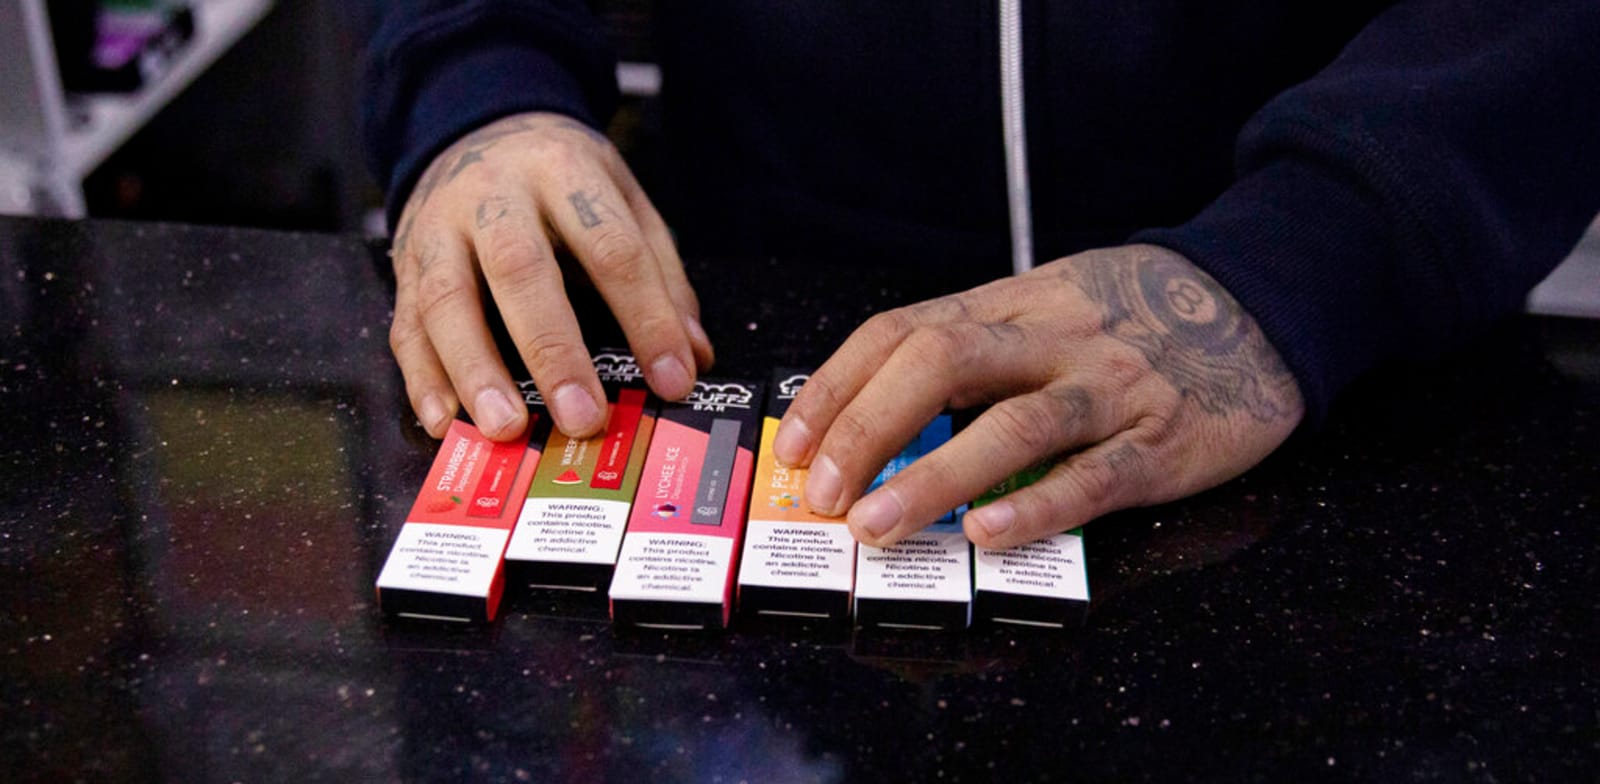 מכירת סיגריות אלקטרוניות / צילום: Associated Press, Marshall Ritzel